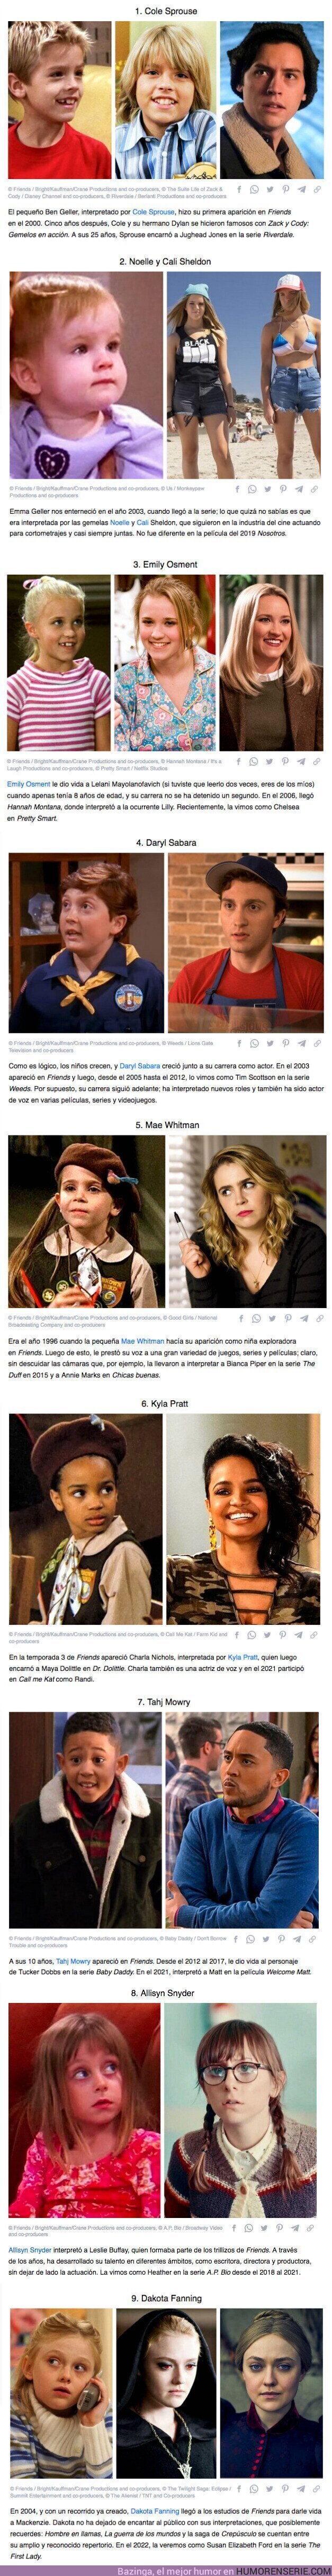 83636 - GALERÍA: 10 Niños actores cuya aparición en “Friends” fue un tremendo impulso para sus carreras